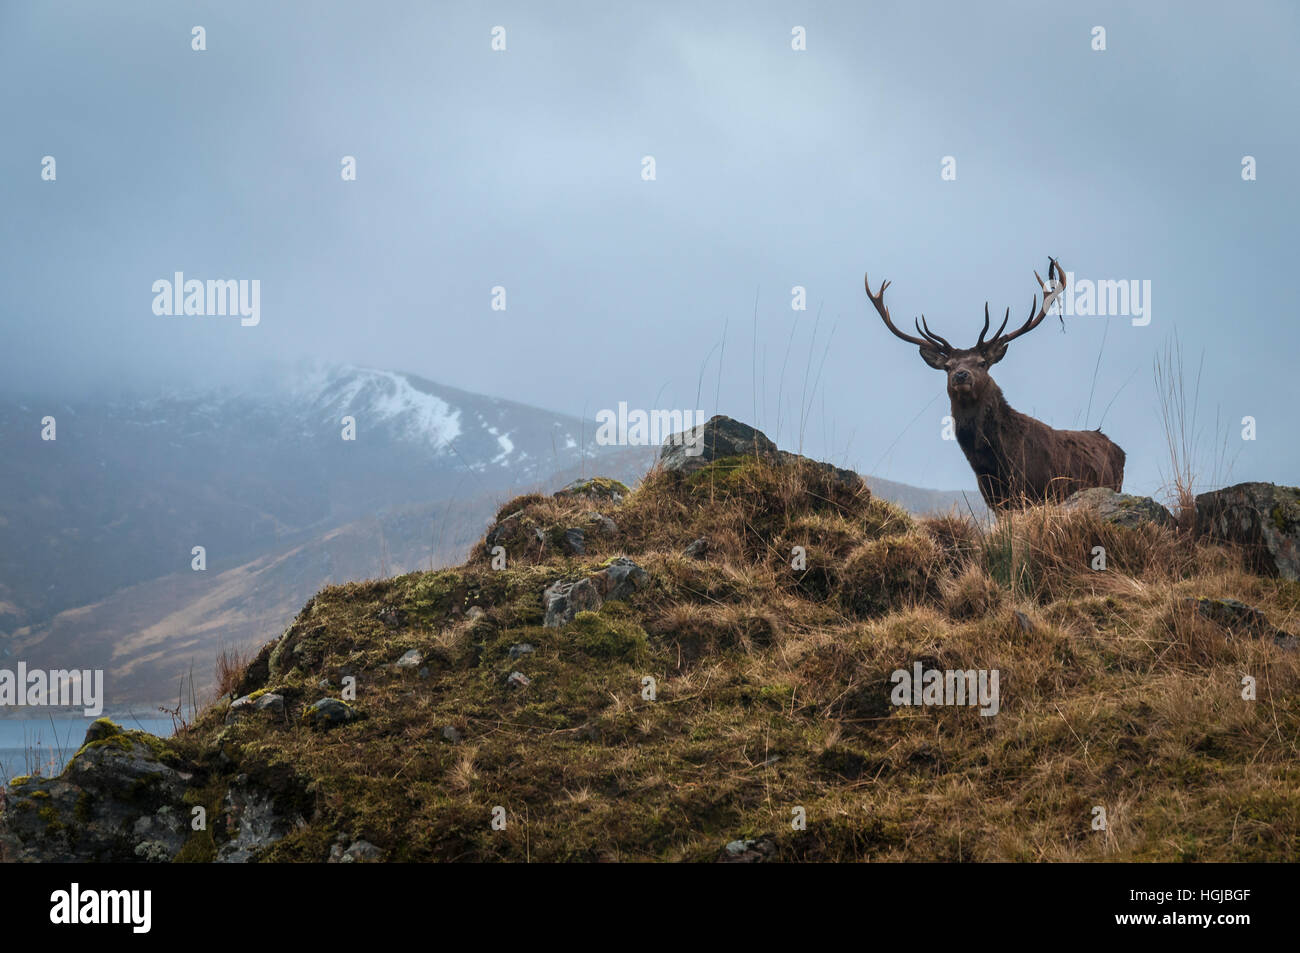 A Red Deer Stag, Cervus elaphus scoticus, in the hills near Loch Quoich in Lochaber, Scotland. Stock Photo